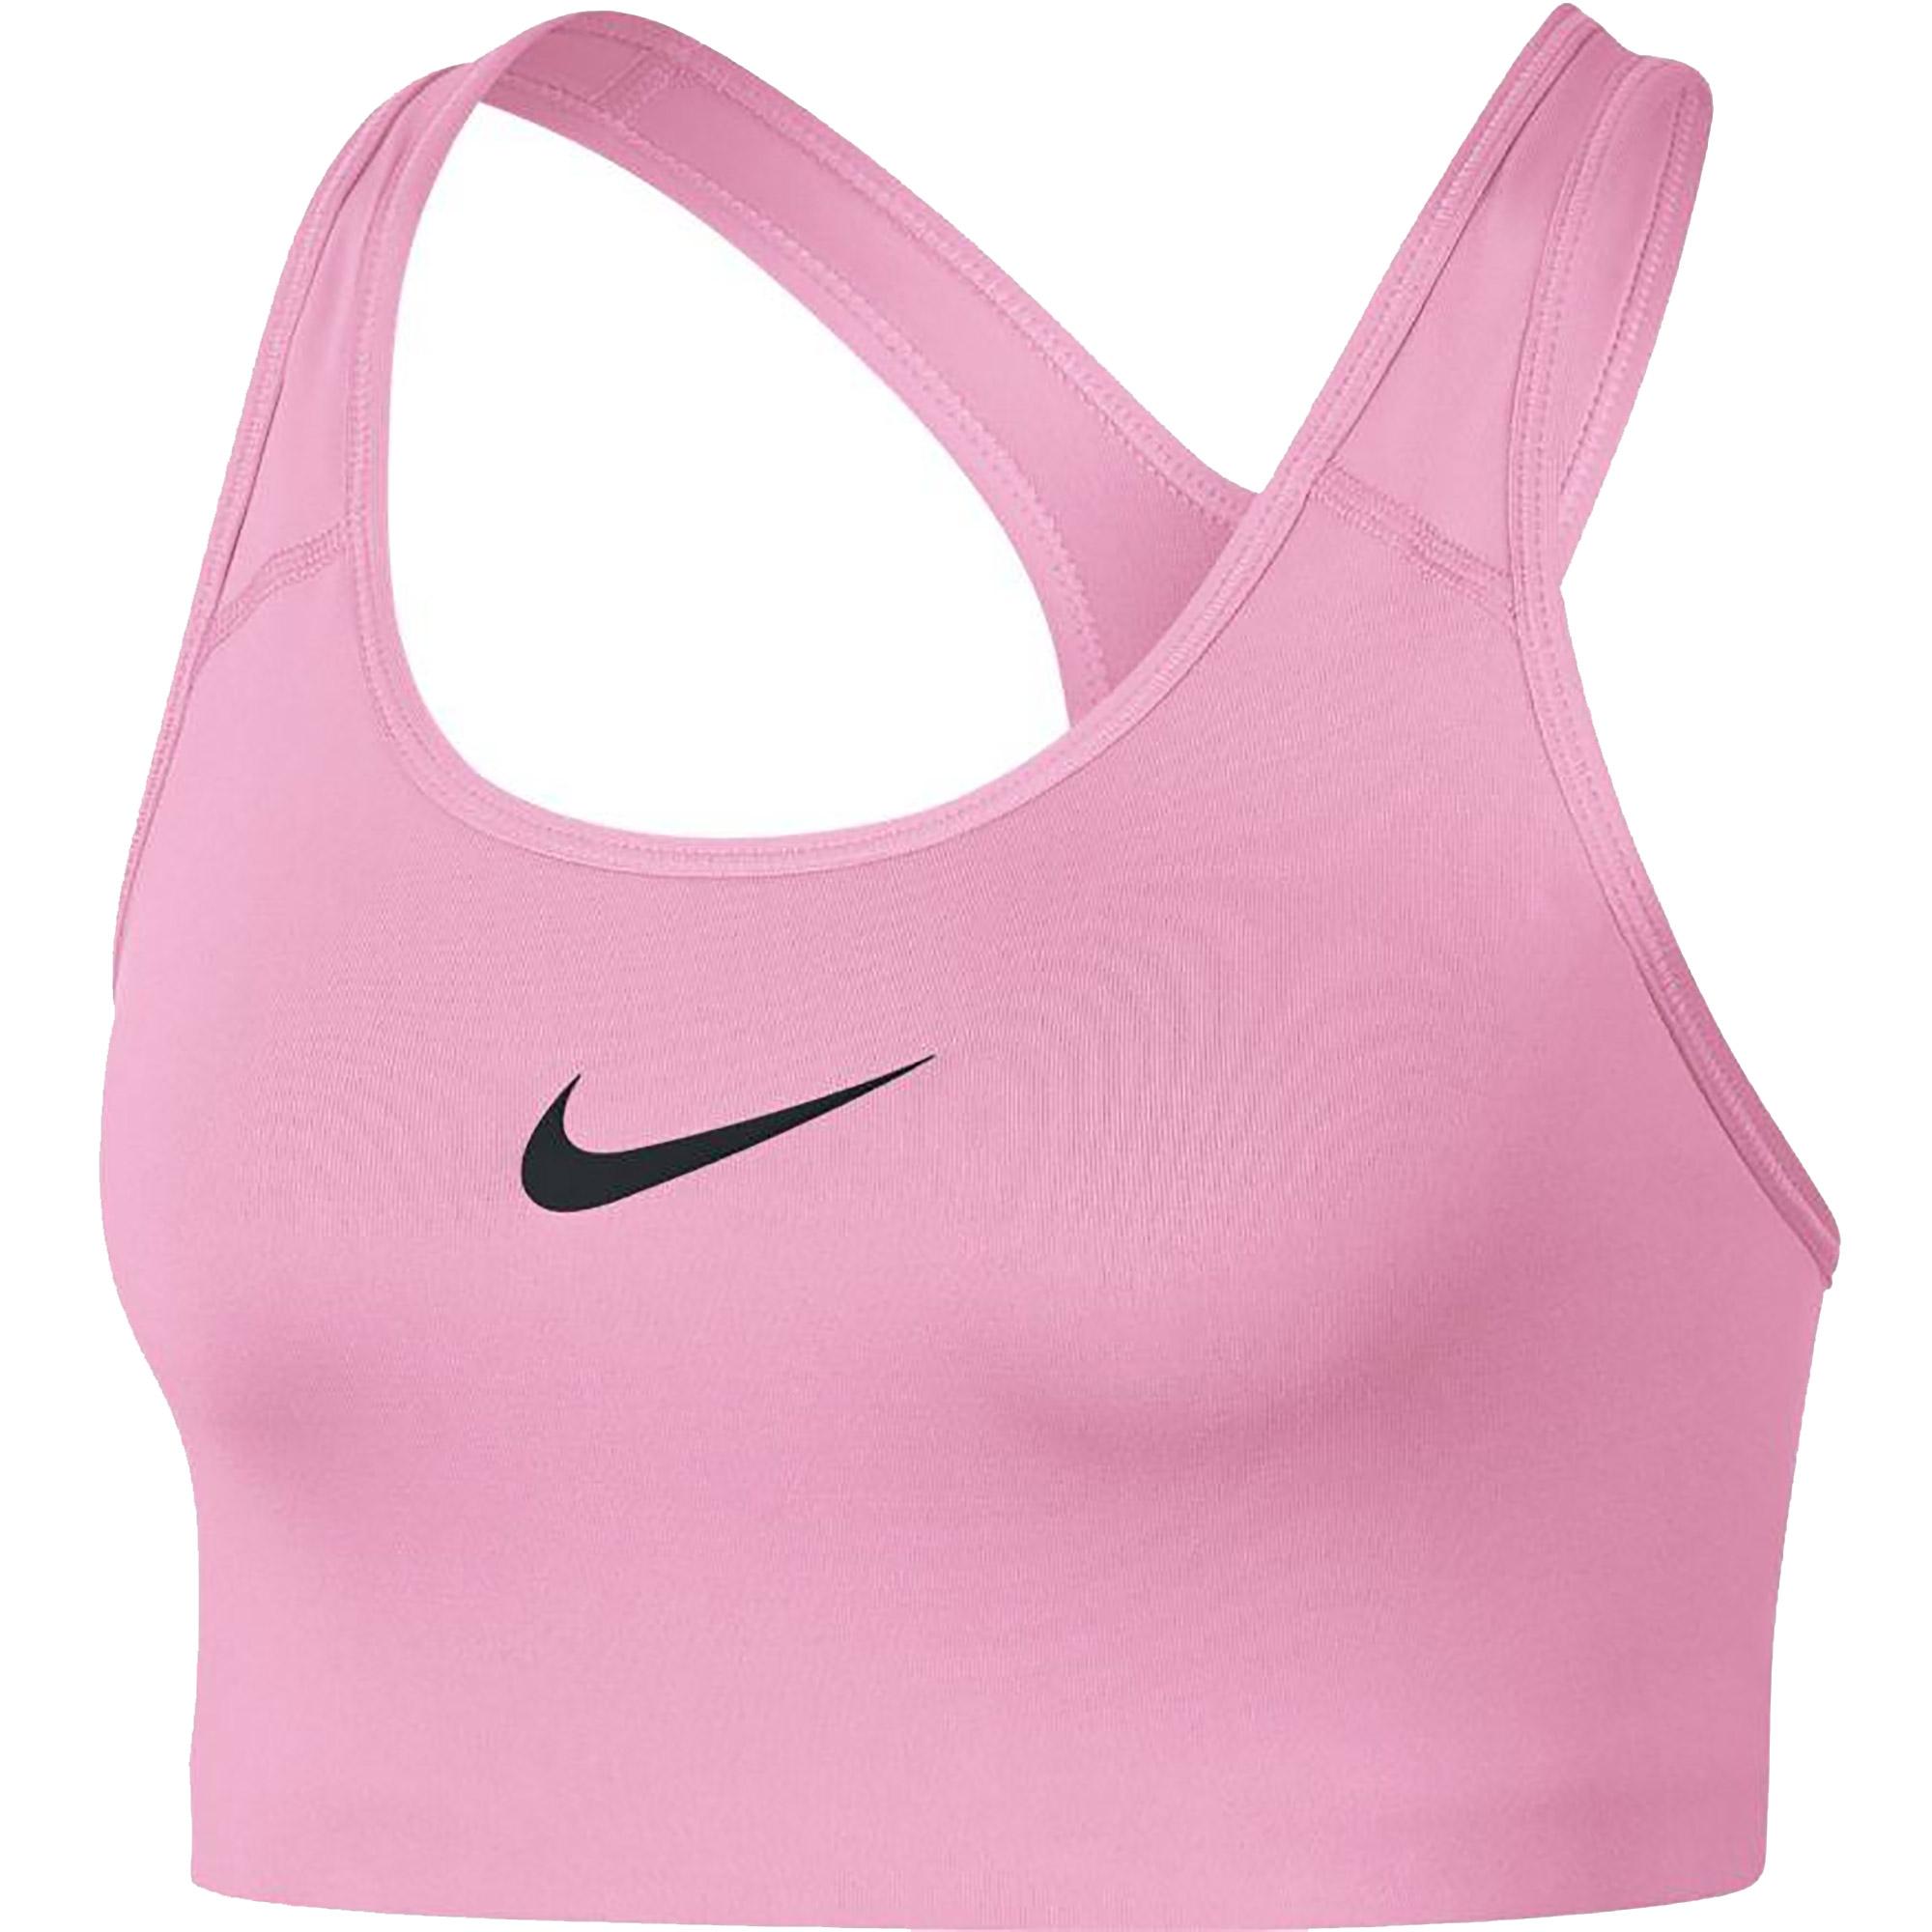 Nike Womens Swoosh Sports Bra - Pink/Black - Tennisnuts.com